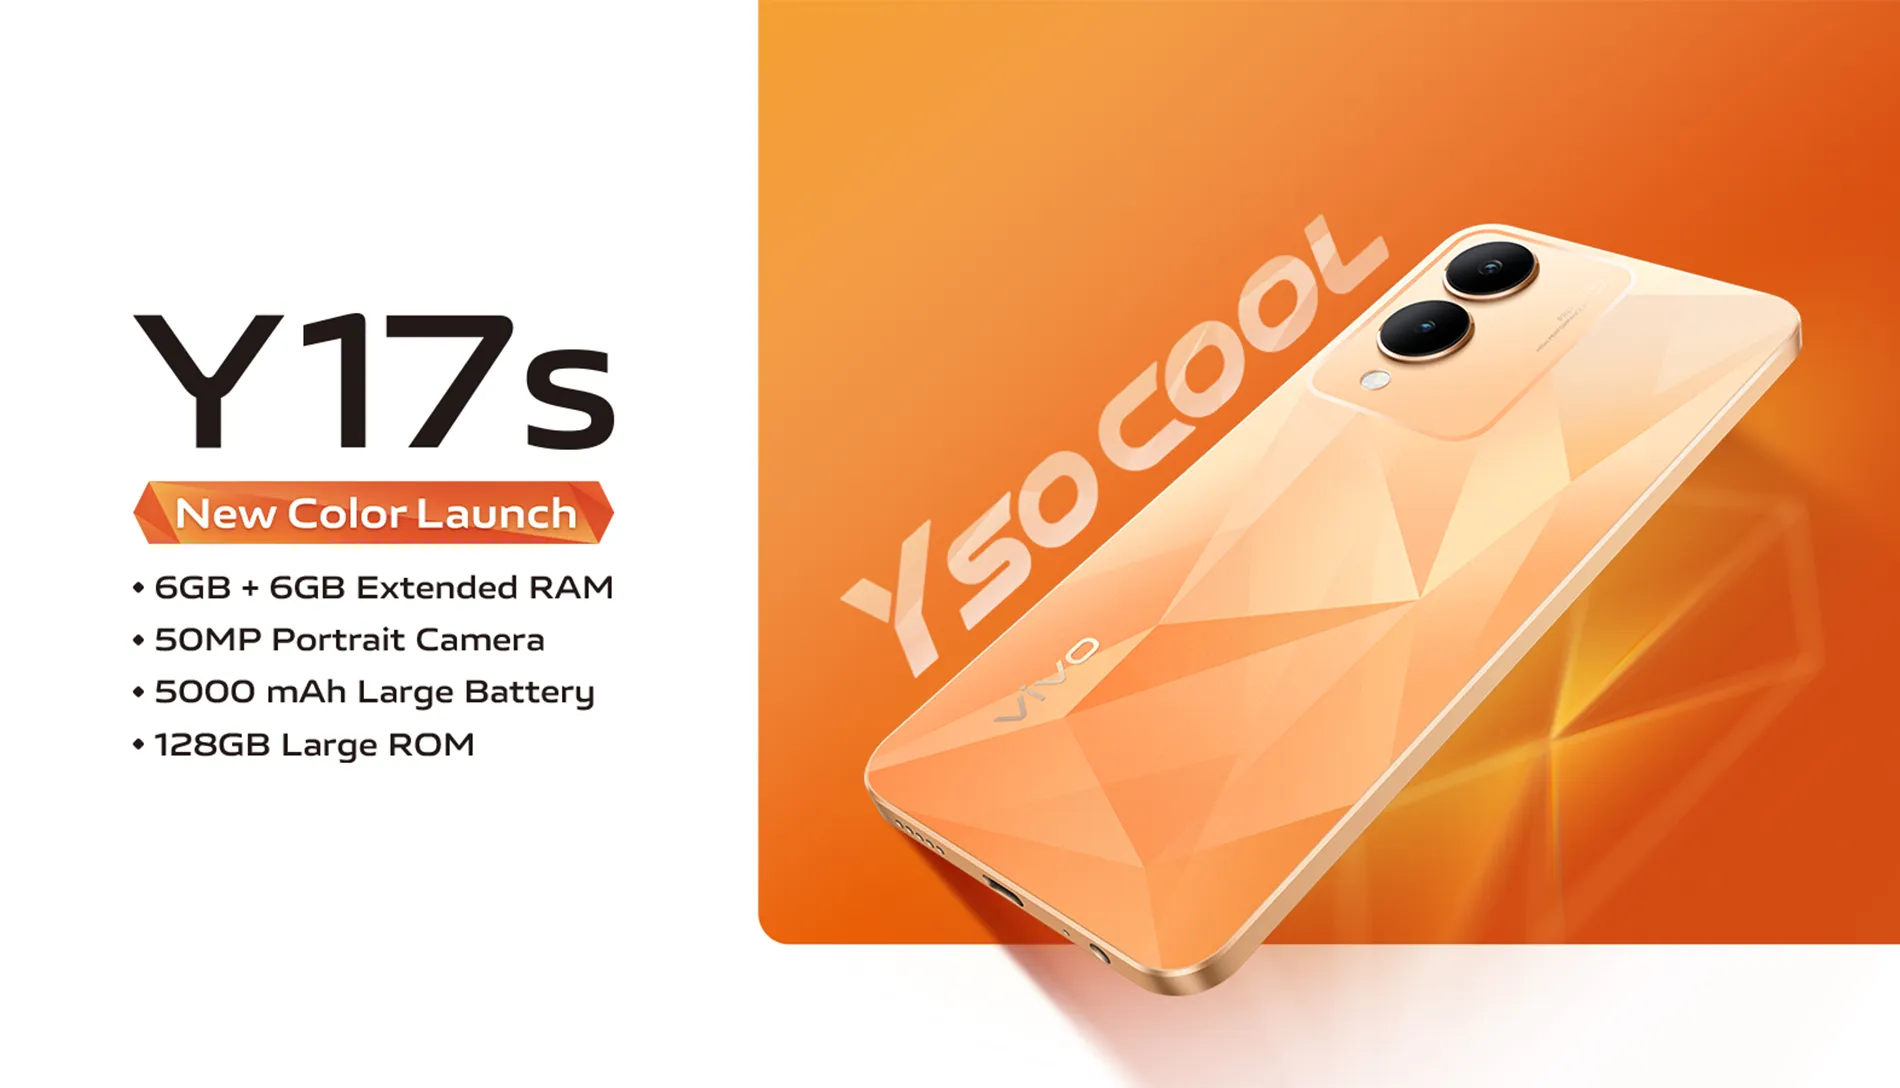 Lộ diện vivo Y17s Diamond Orange với màu cam rực rỡ, được nâng cấp thêm RAM và sẽ bán ra tại Ấn Độ